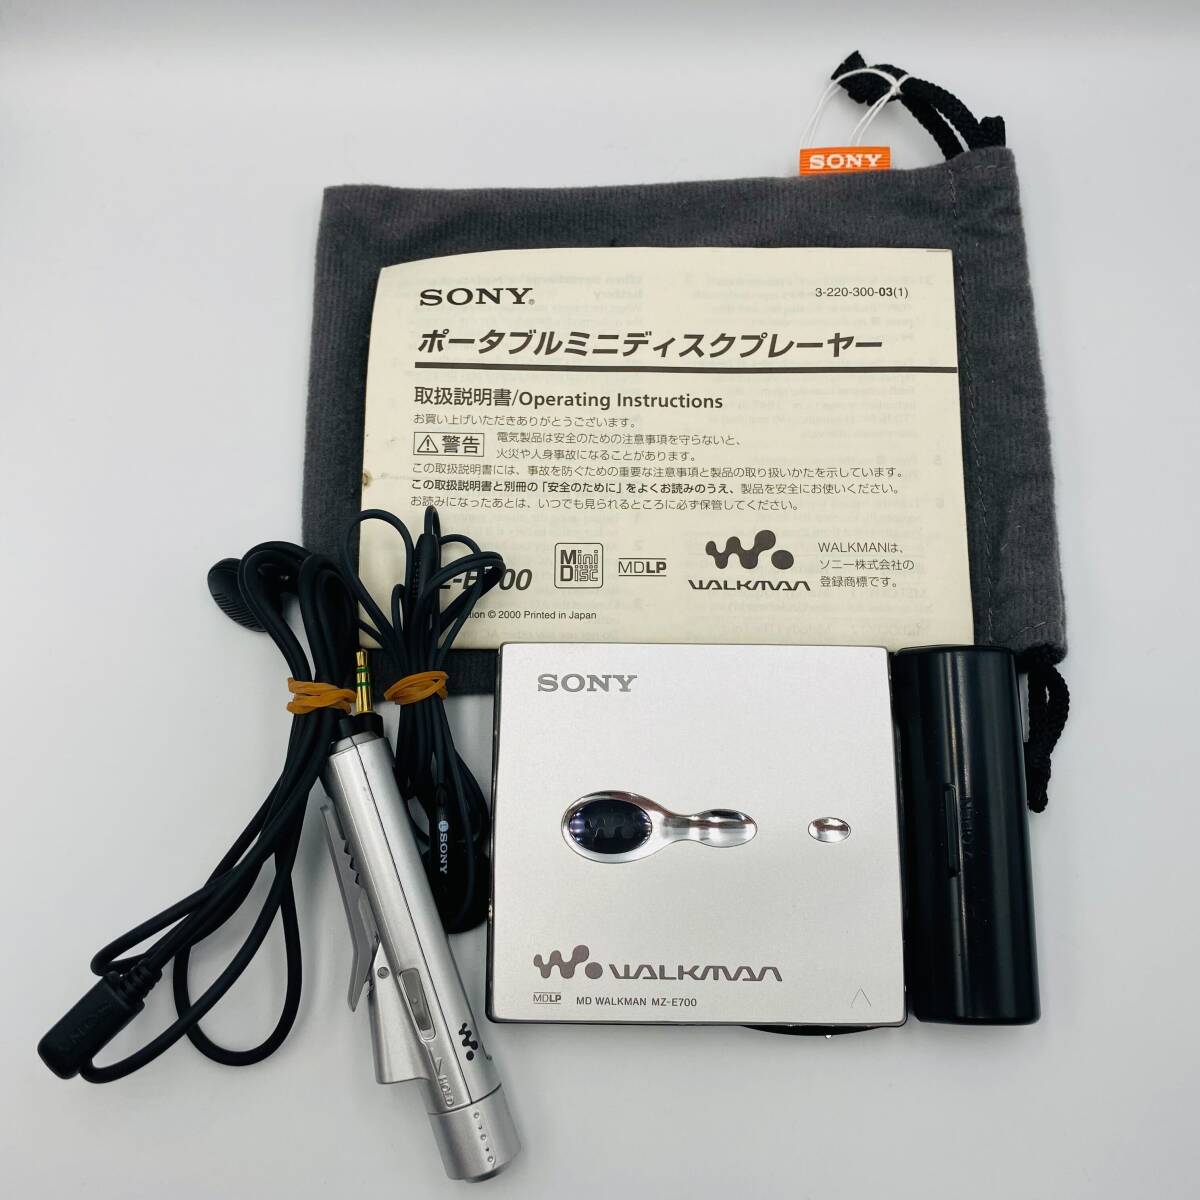 !A80363:SONY MZ-E700 портативный MD плеер серебряный WALKMAN Sony Walkman рабочий товар б/у 